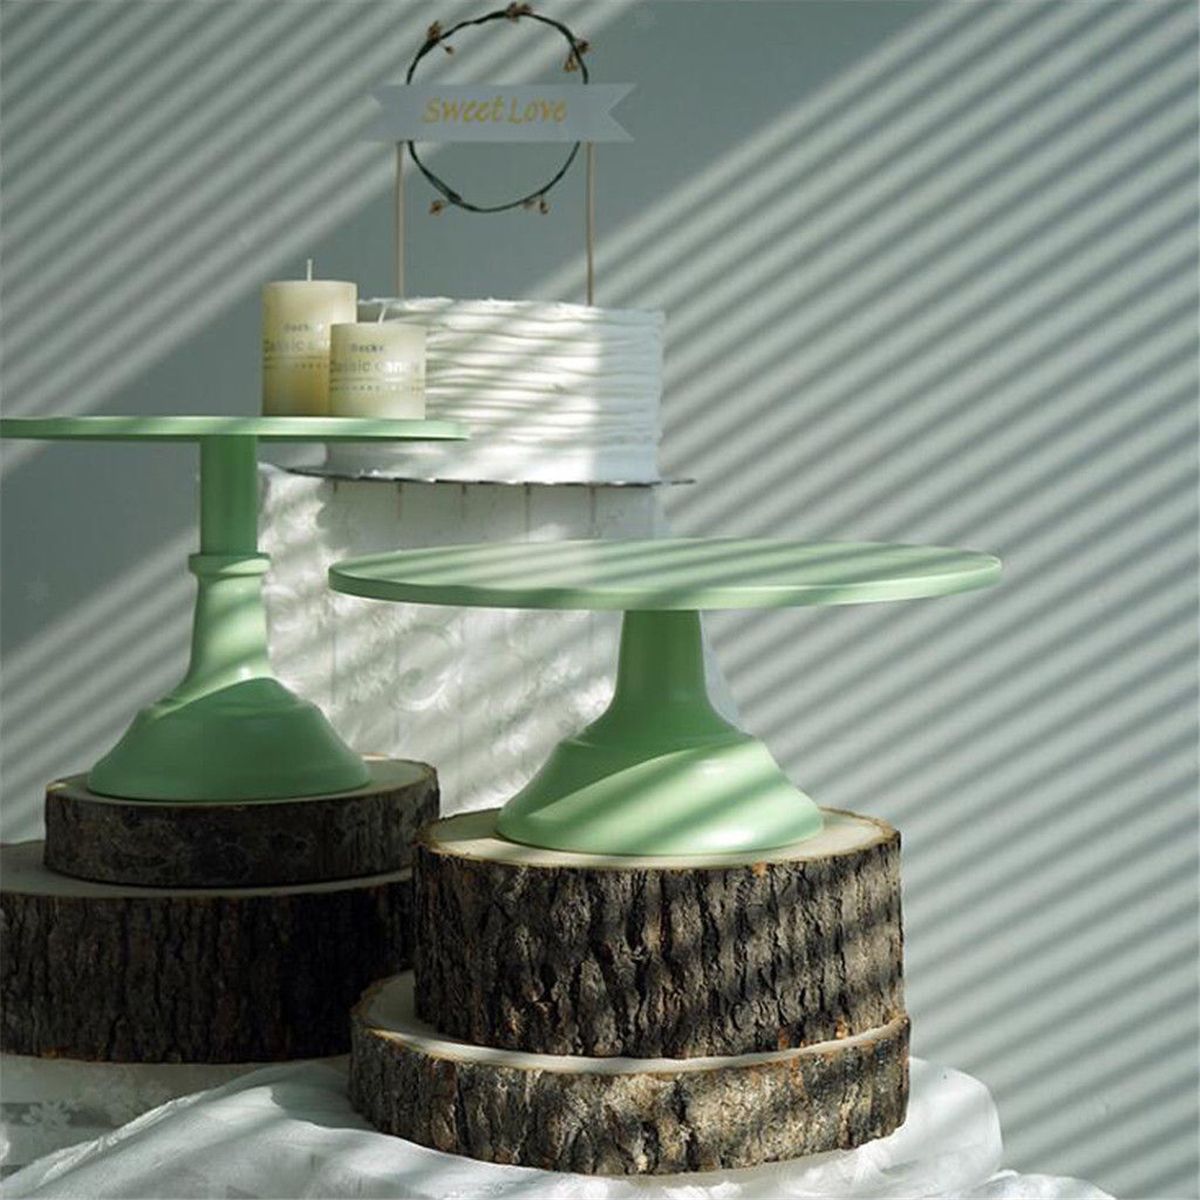 1012-Inch-Iron-Green-Round-Cake-Stand-Pedestal-Dessert-Holder-Wedding-Party-Decorations-1476996